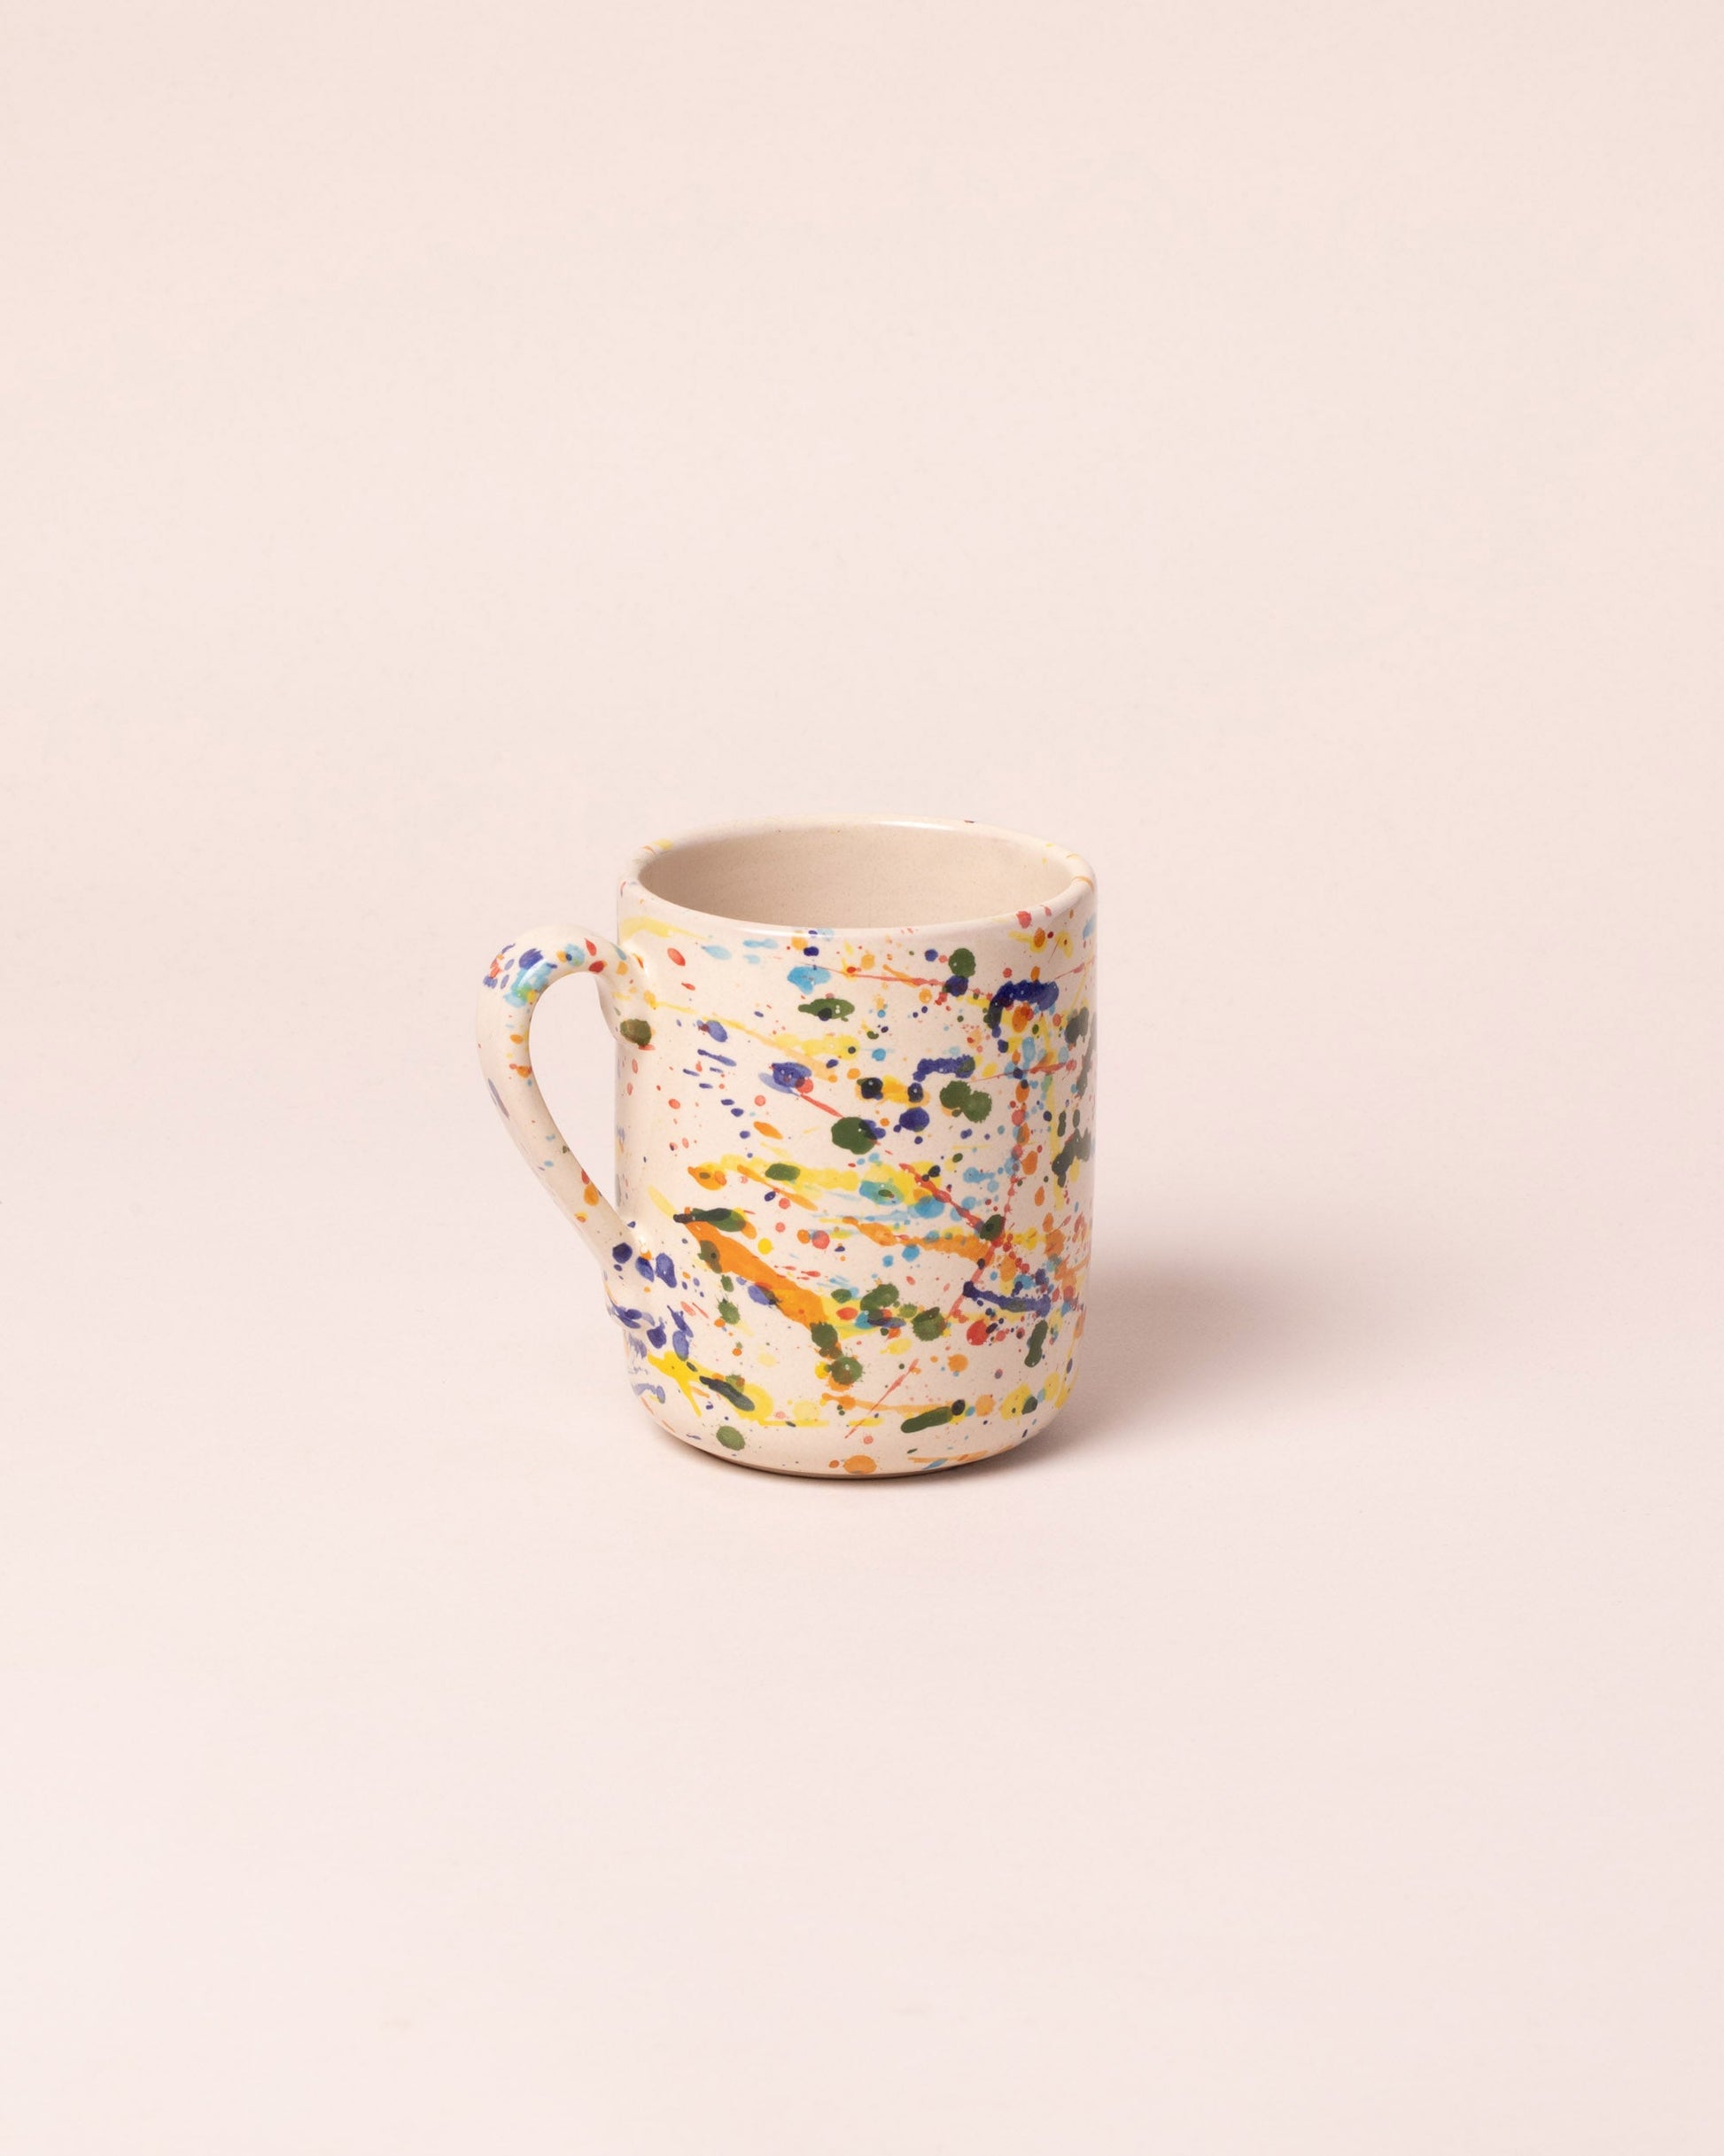 La Ceramica Vincenzo Del Monaco Colored Drops Coffee Mug on light color background.